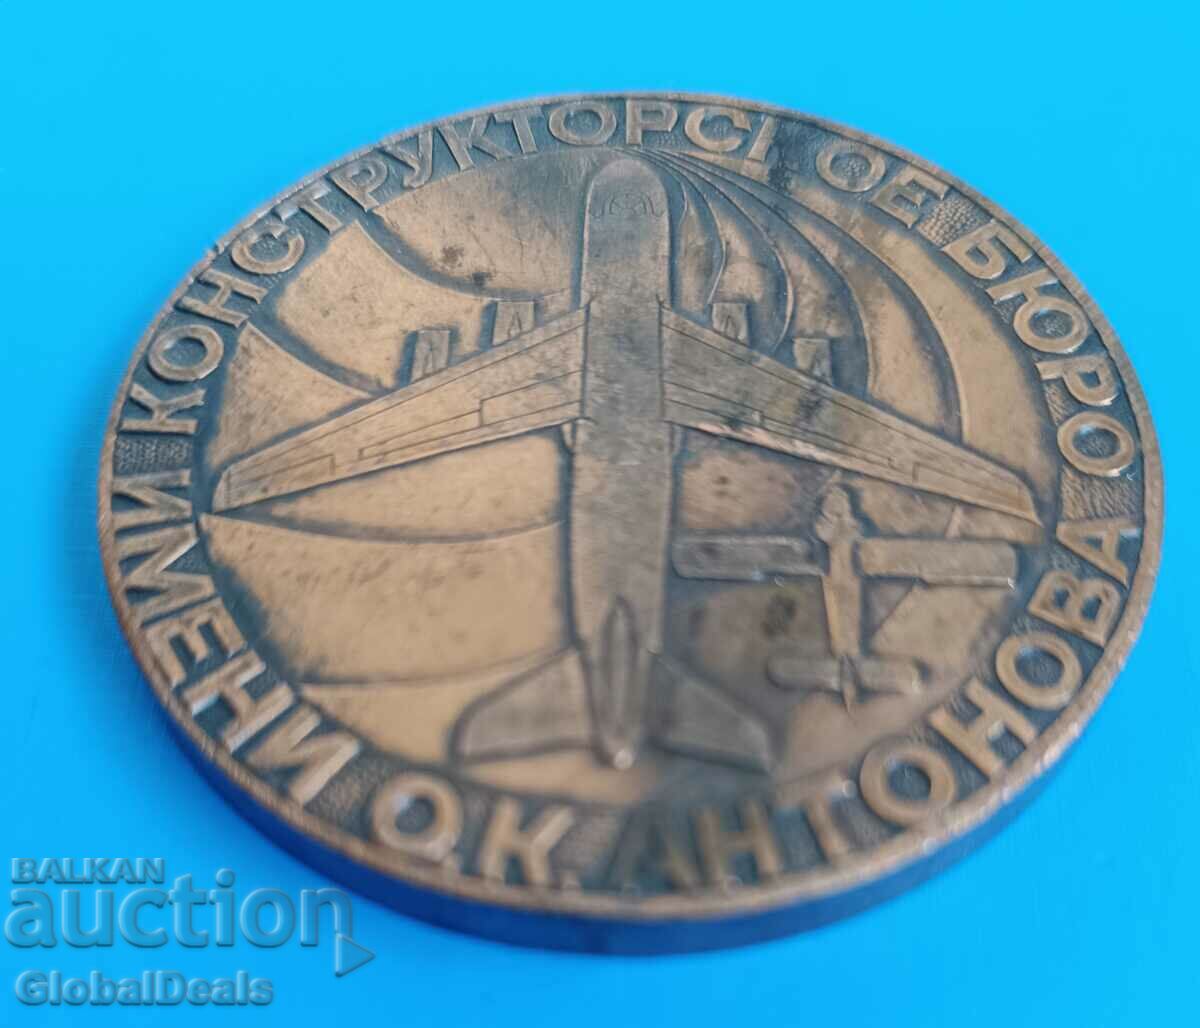 1 BZC - Medalie, Placă - Aeronavă Antonov, URSS